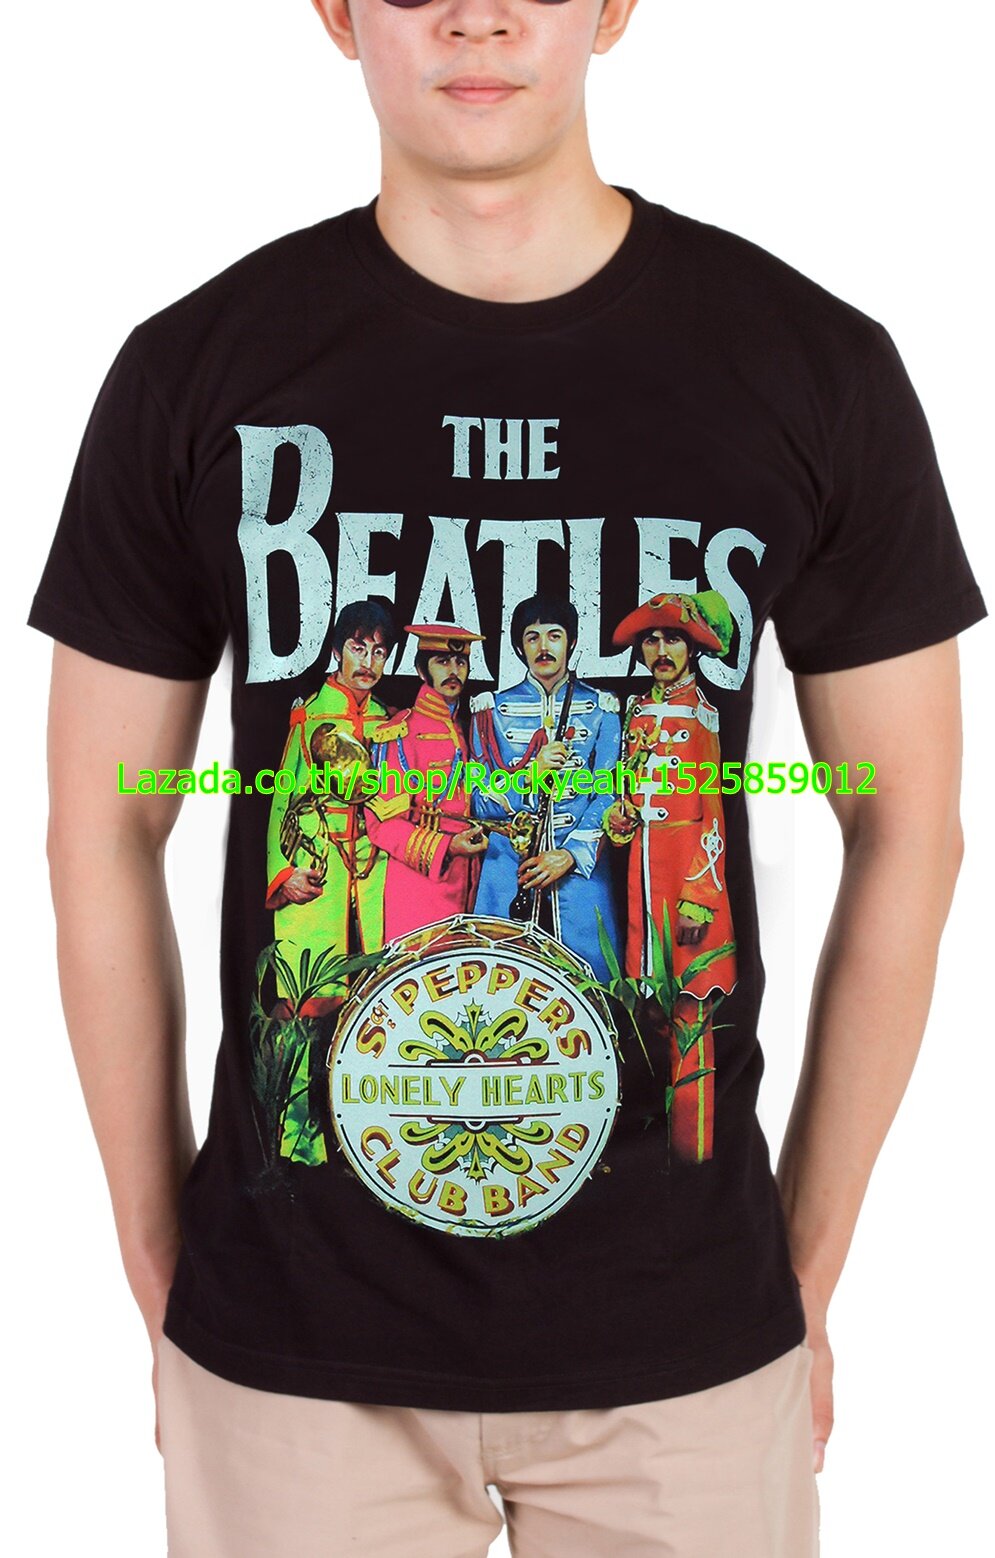 เสื้อวง The Beatles ร็อคในตำนาน อมตะ เดอะบีเทิลส์ ไซส์ยุโรป Rcm1765 -  Rockyeah - Thaipick